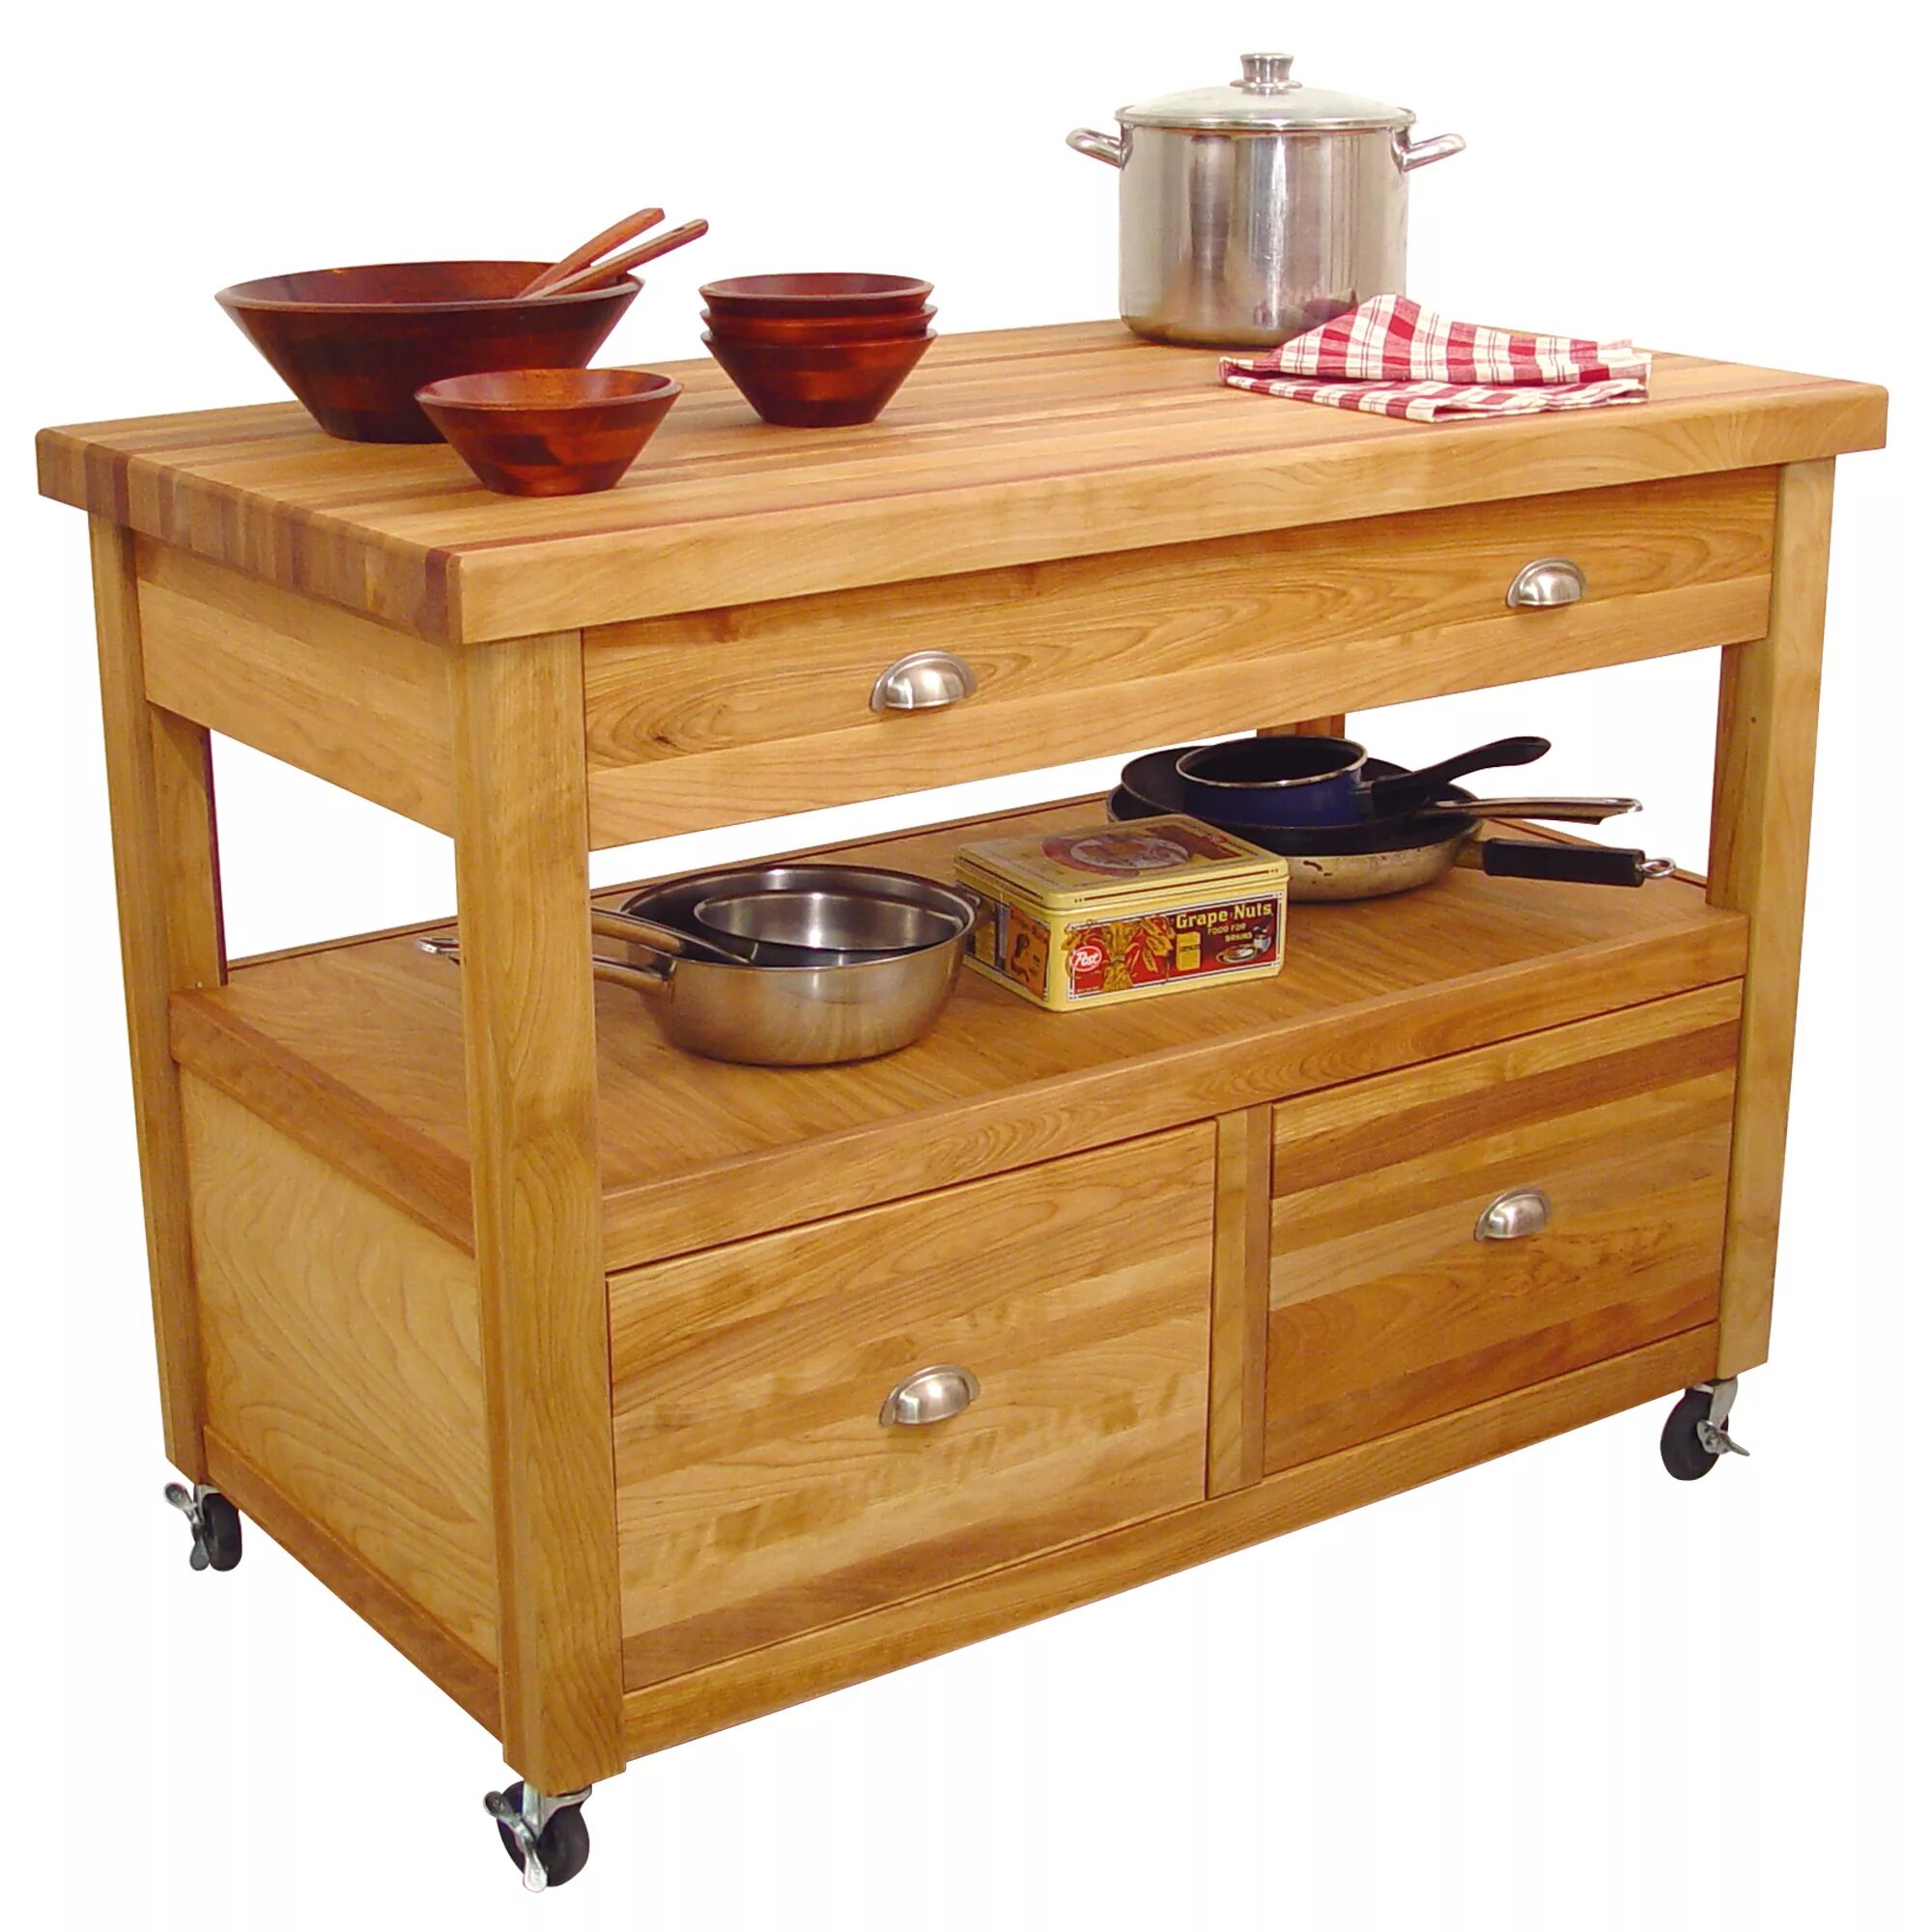 Купить столик с ящиками. Разделочный столик на колесах для кухни. Стол разделочный деревянный. Кухонный раздаточный стол на колесиках. Разделочный стол для кухни.